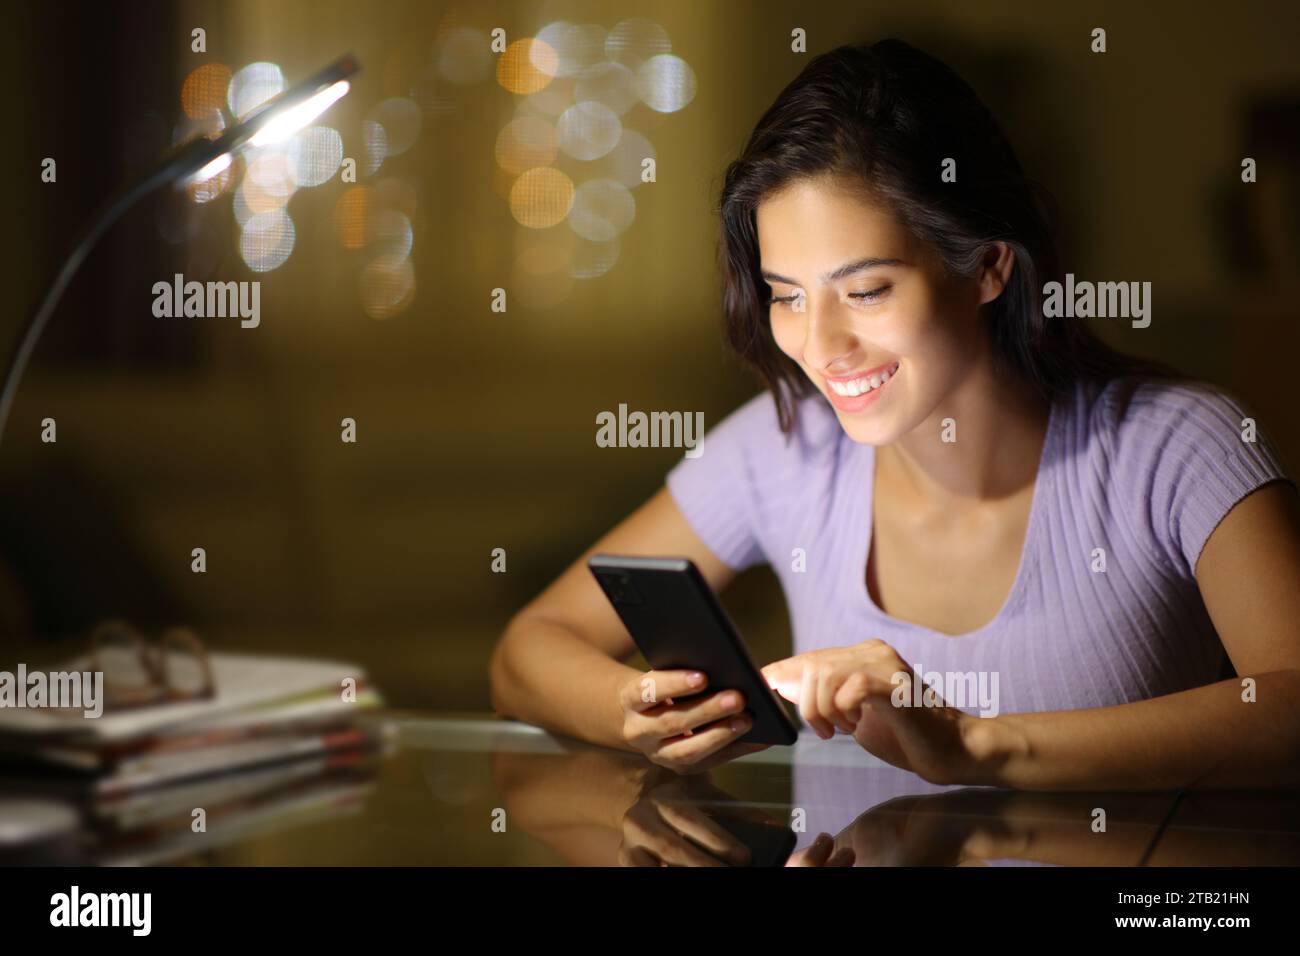 Mujer feliz en la noche usando el teléfono celular en casa Foto de stock